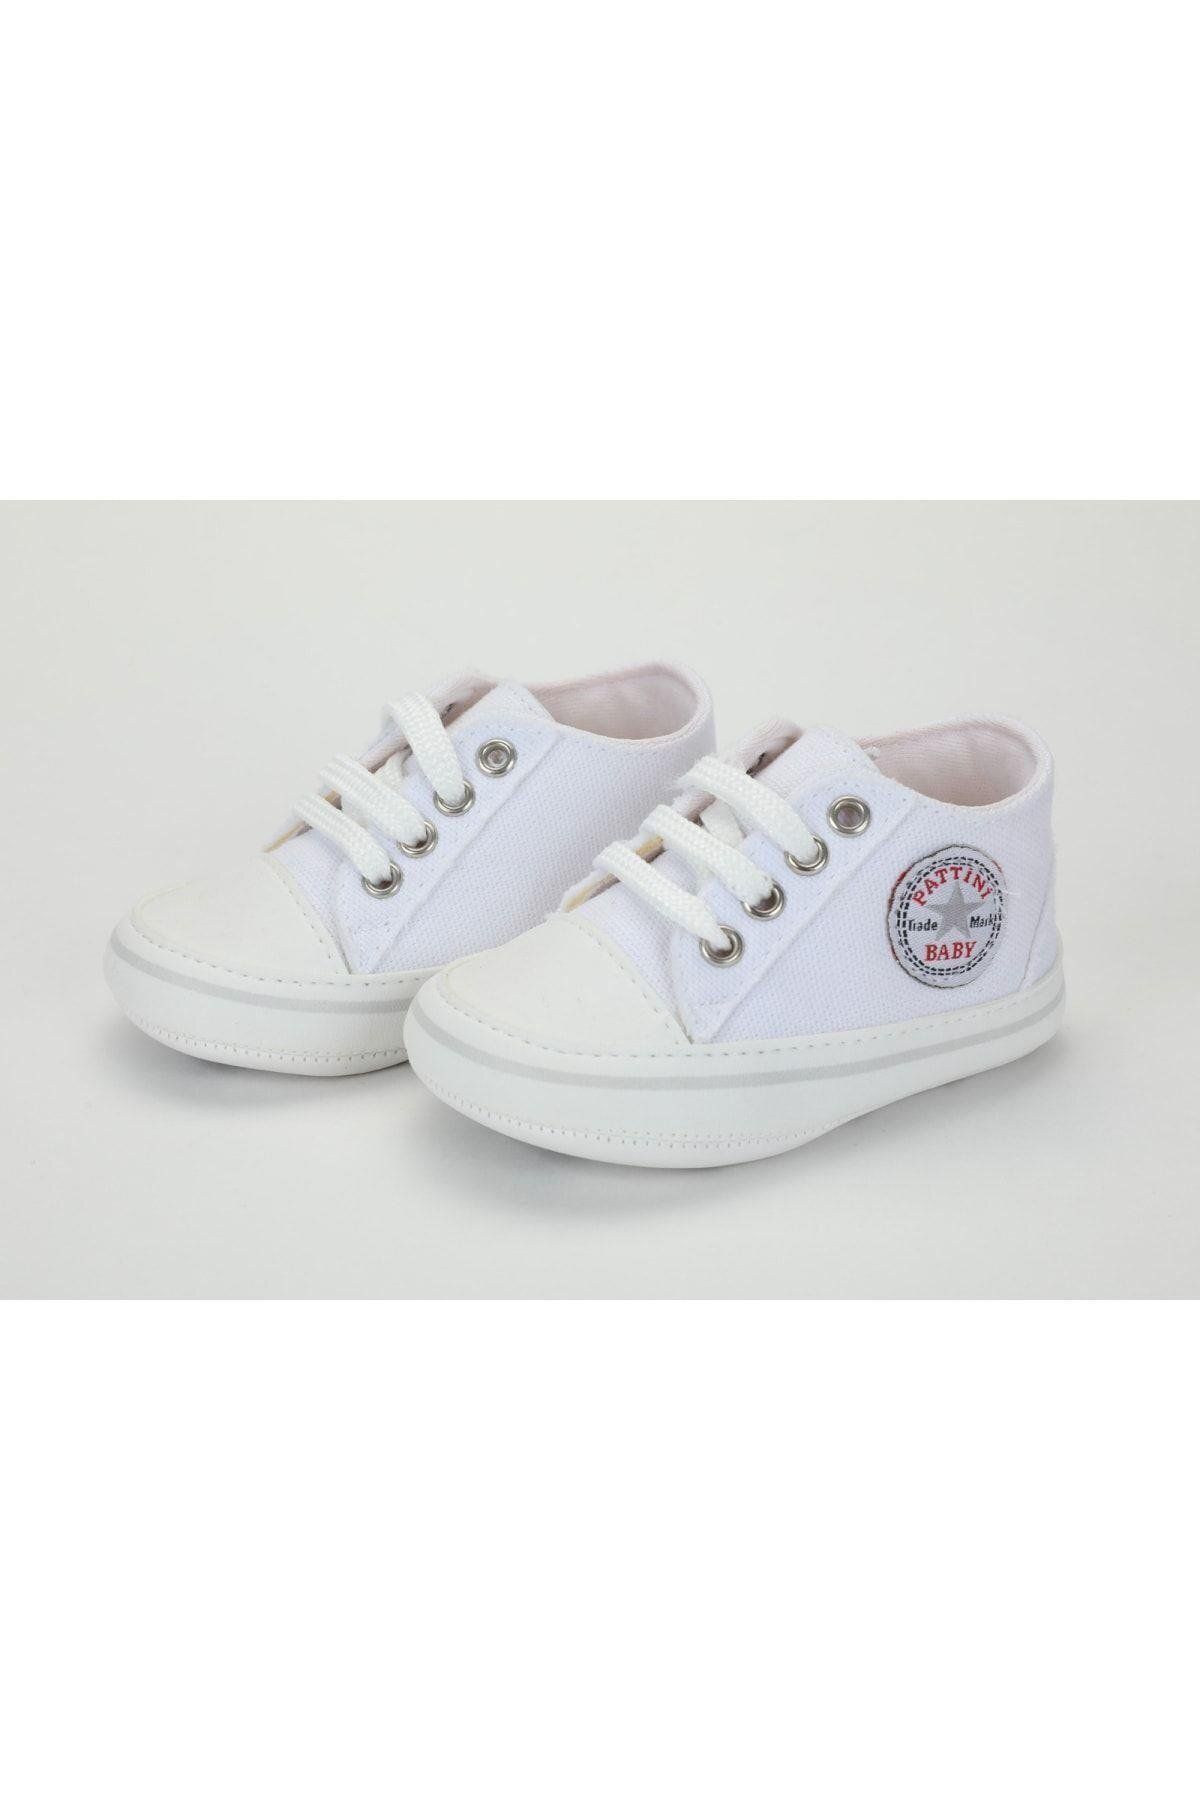 Baby Pattini Unisex Bebek Beyaz Armalı Converse Ayakkabı - Patik - 4336